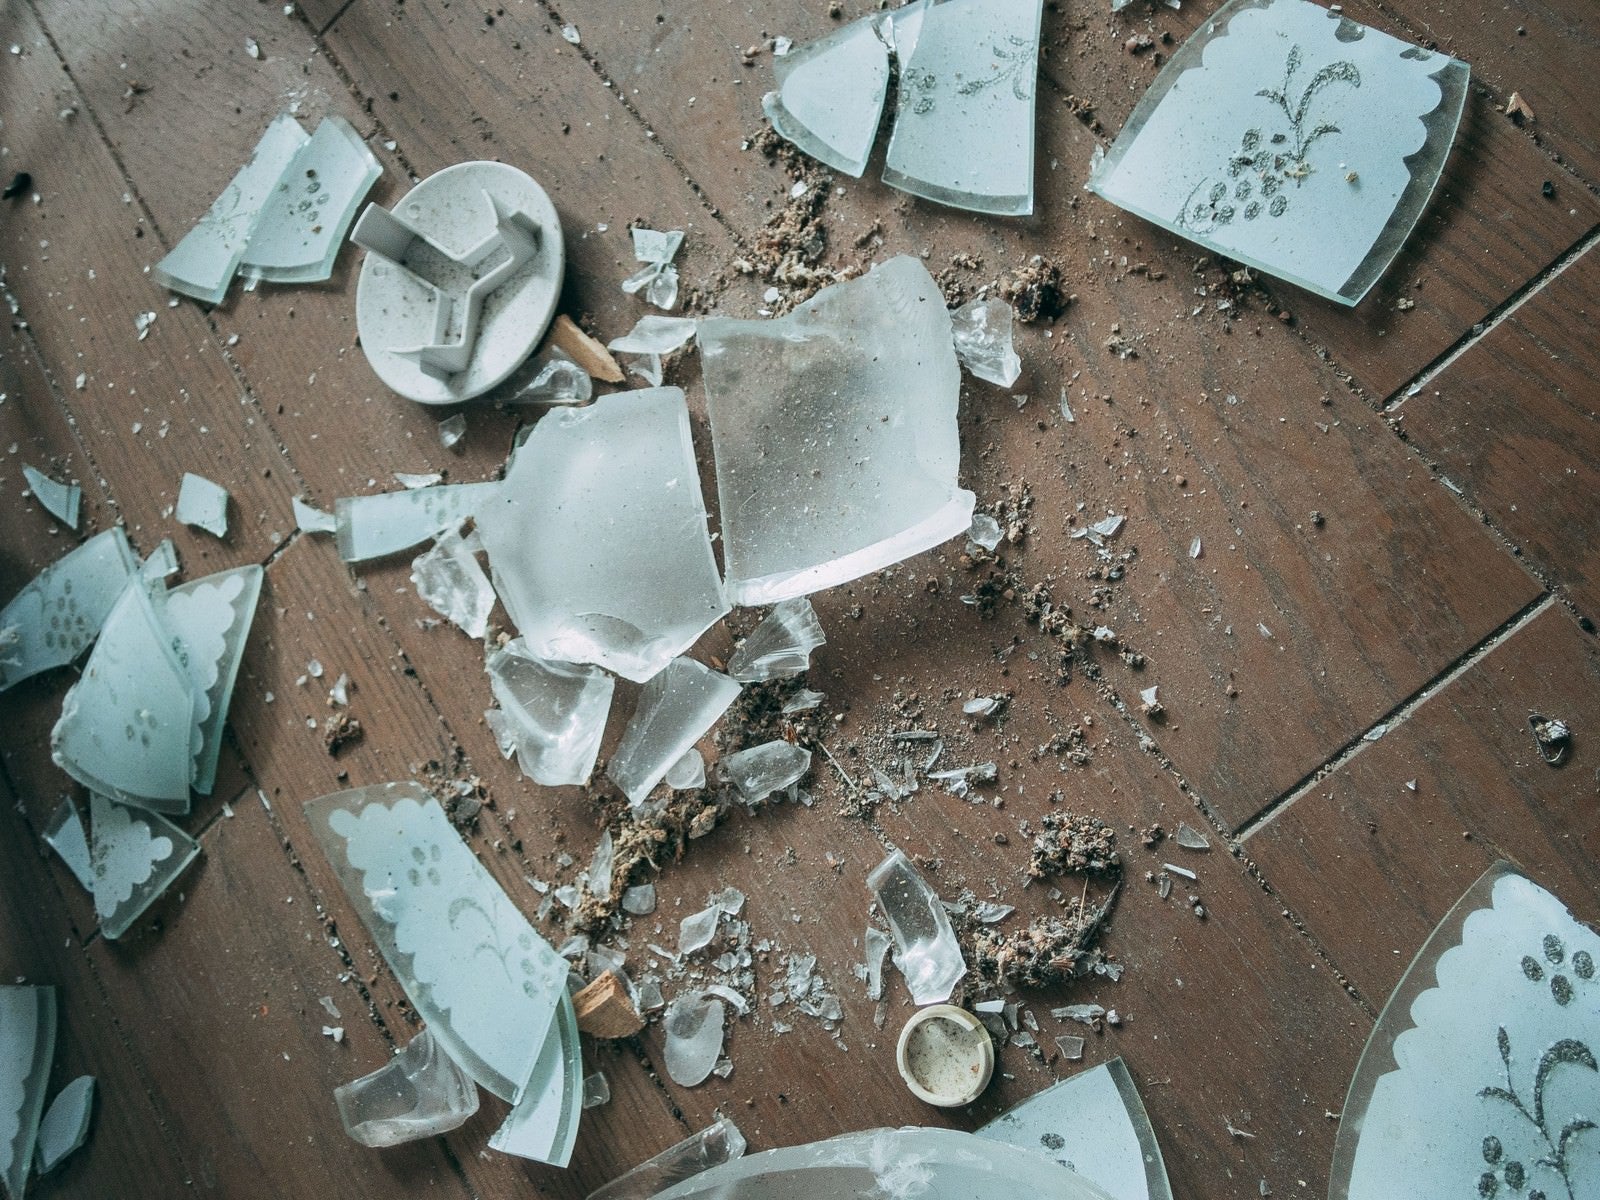 「粉々になったガラスの破片」の写真